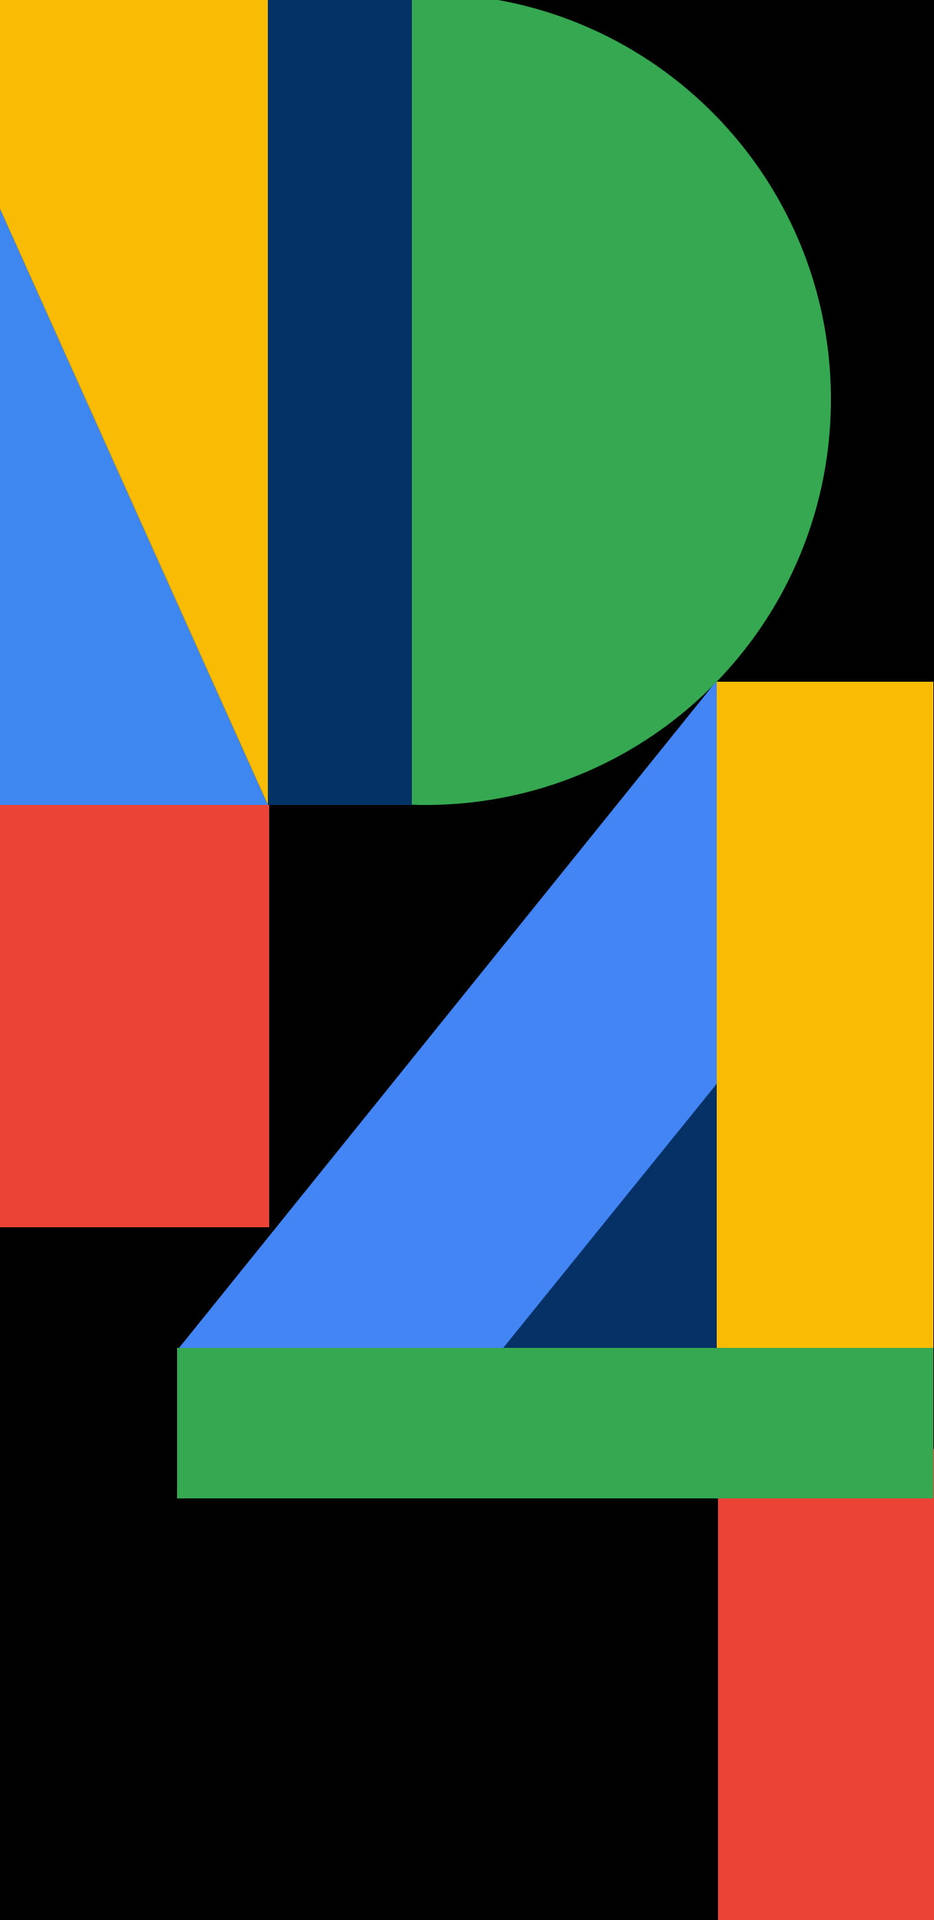 P4 Word Graphic Google Pixel 4 Wallpaper